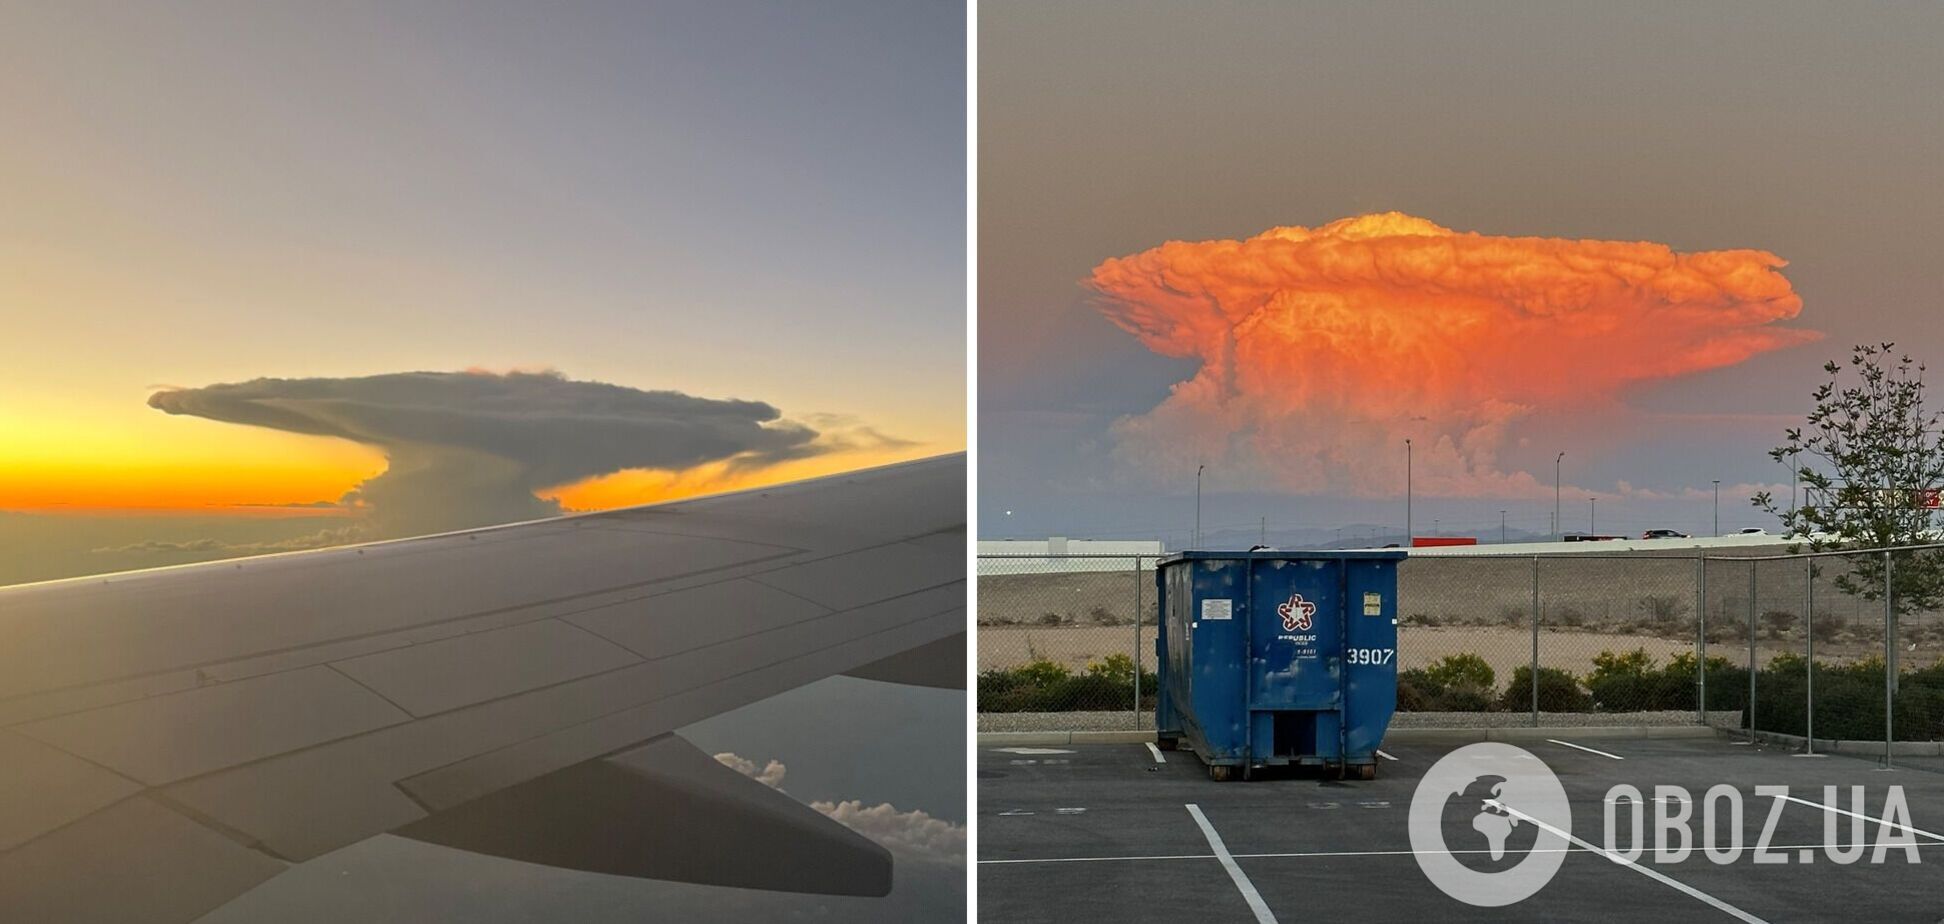  У Лас-Вегасі хмара у вигляді 'ядерного гриба' налякала містян. Фото